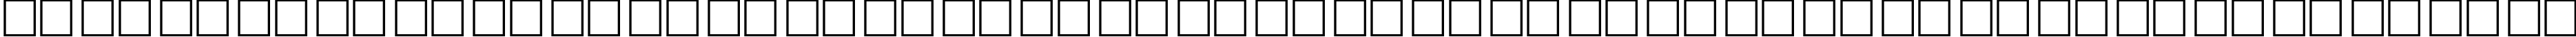 Пример написания русского алфавита шрифтом XmasDings